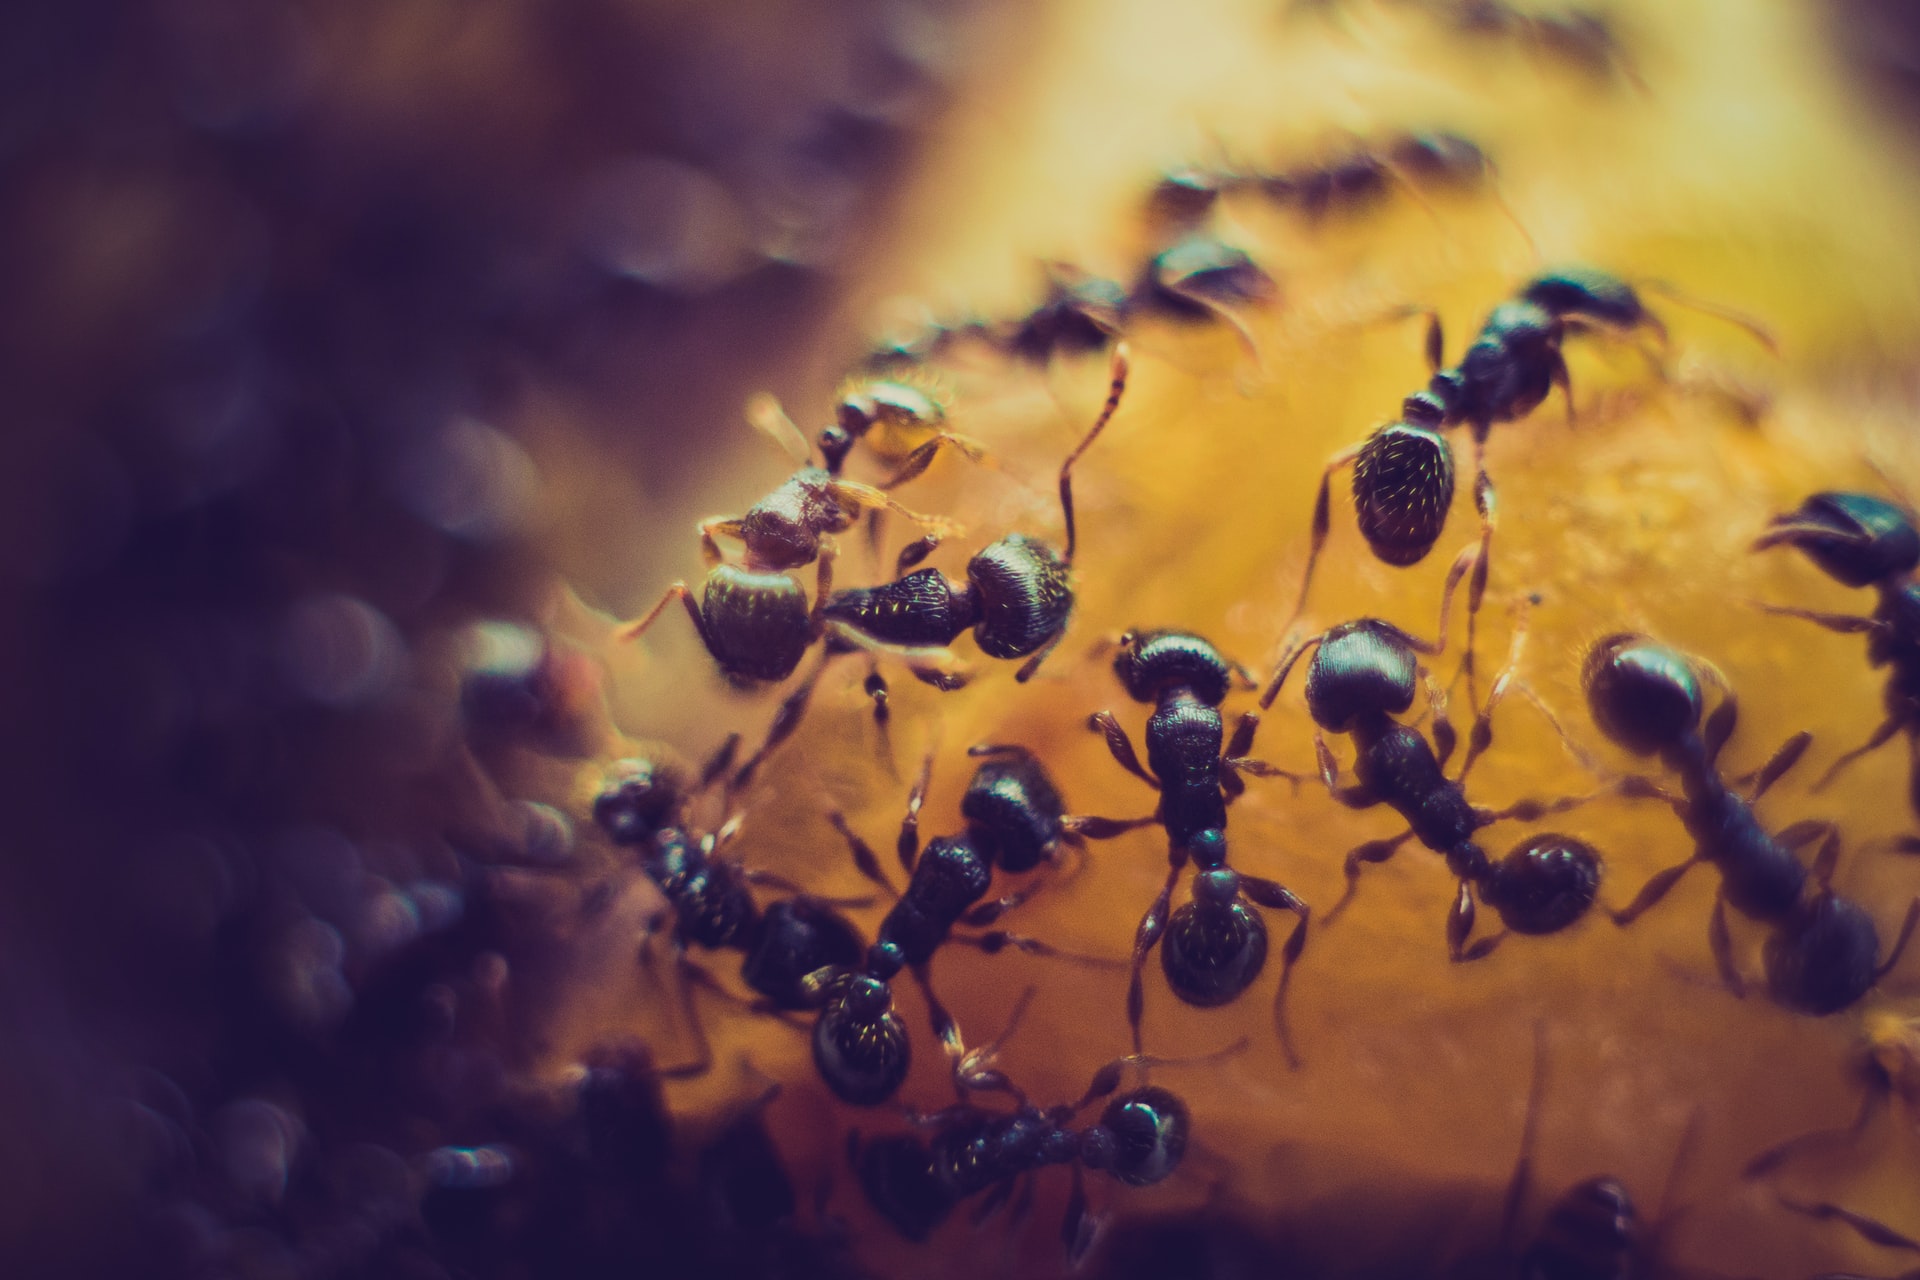 Kodin tuholaisia, kuten muurahaisia, voi ennaltaehkäistä pitämällä huolta yleisestä siisteydestä.